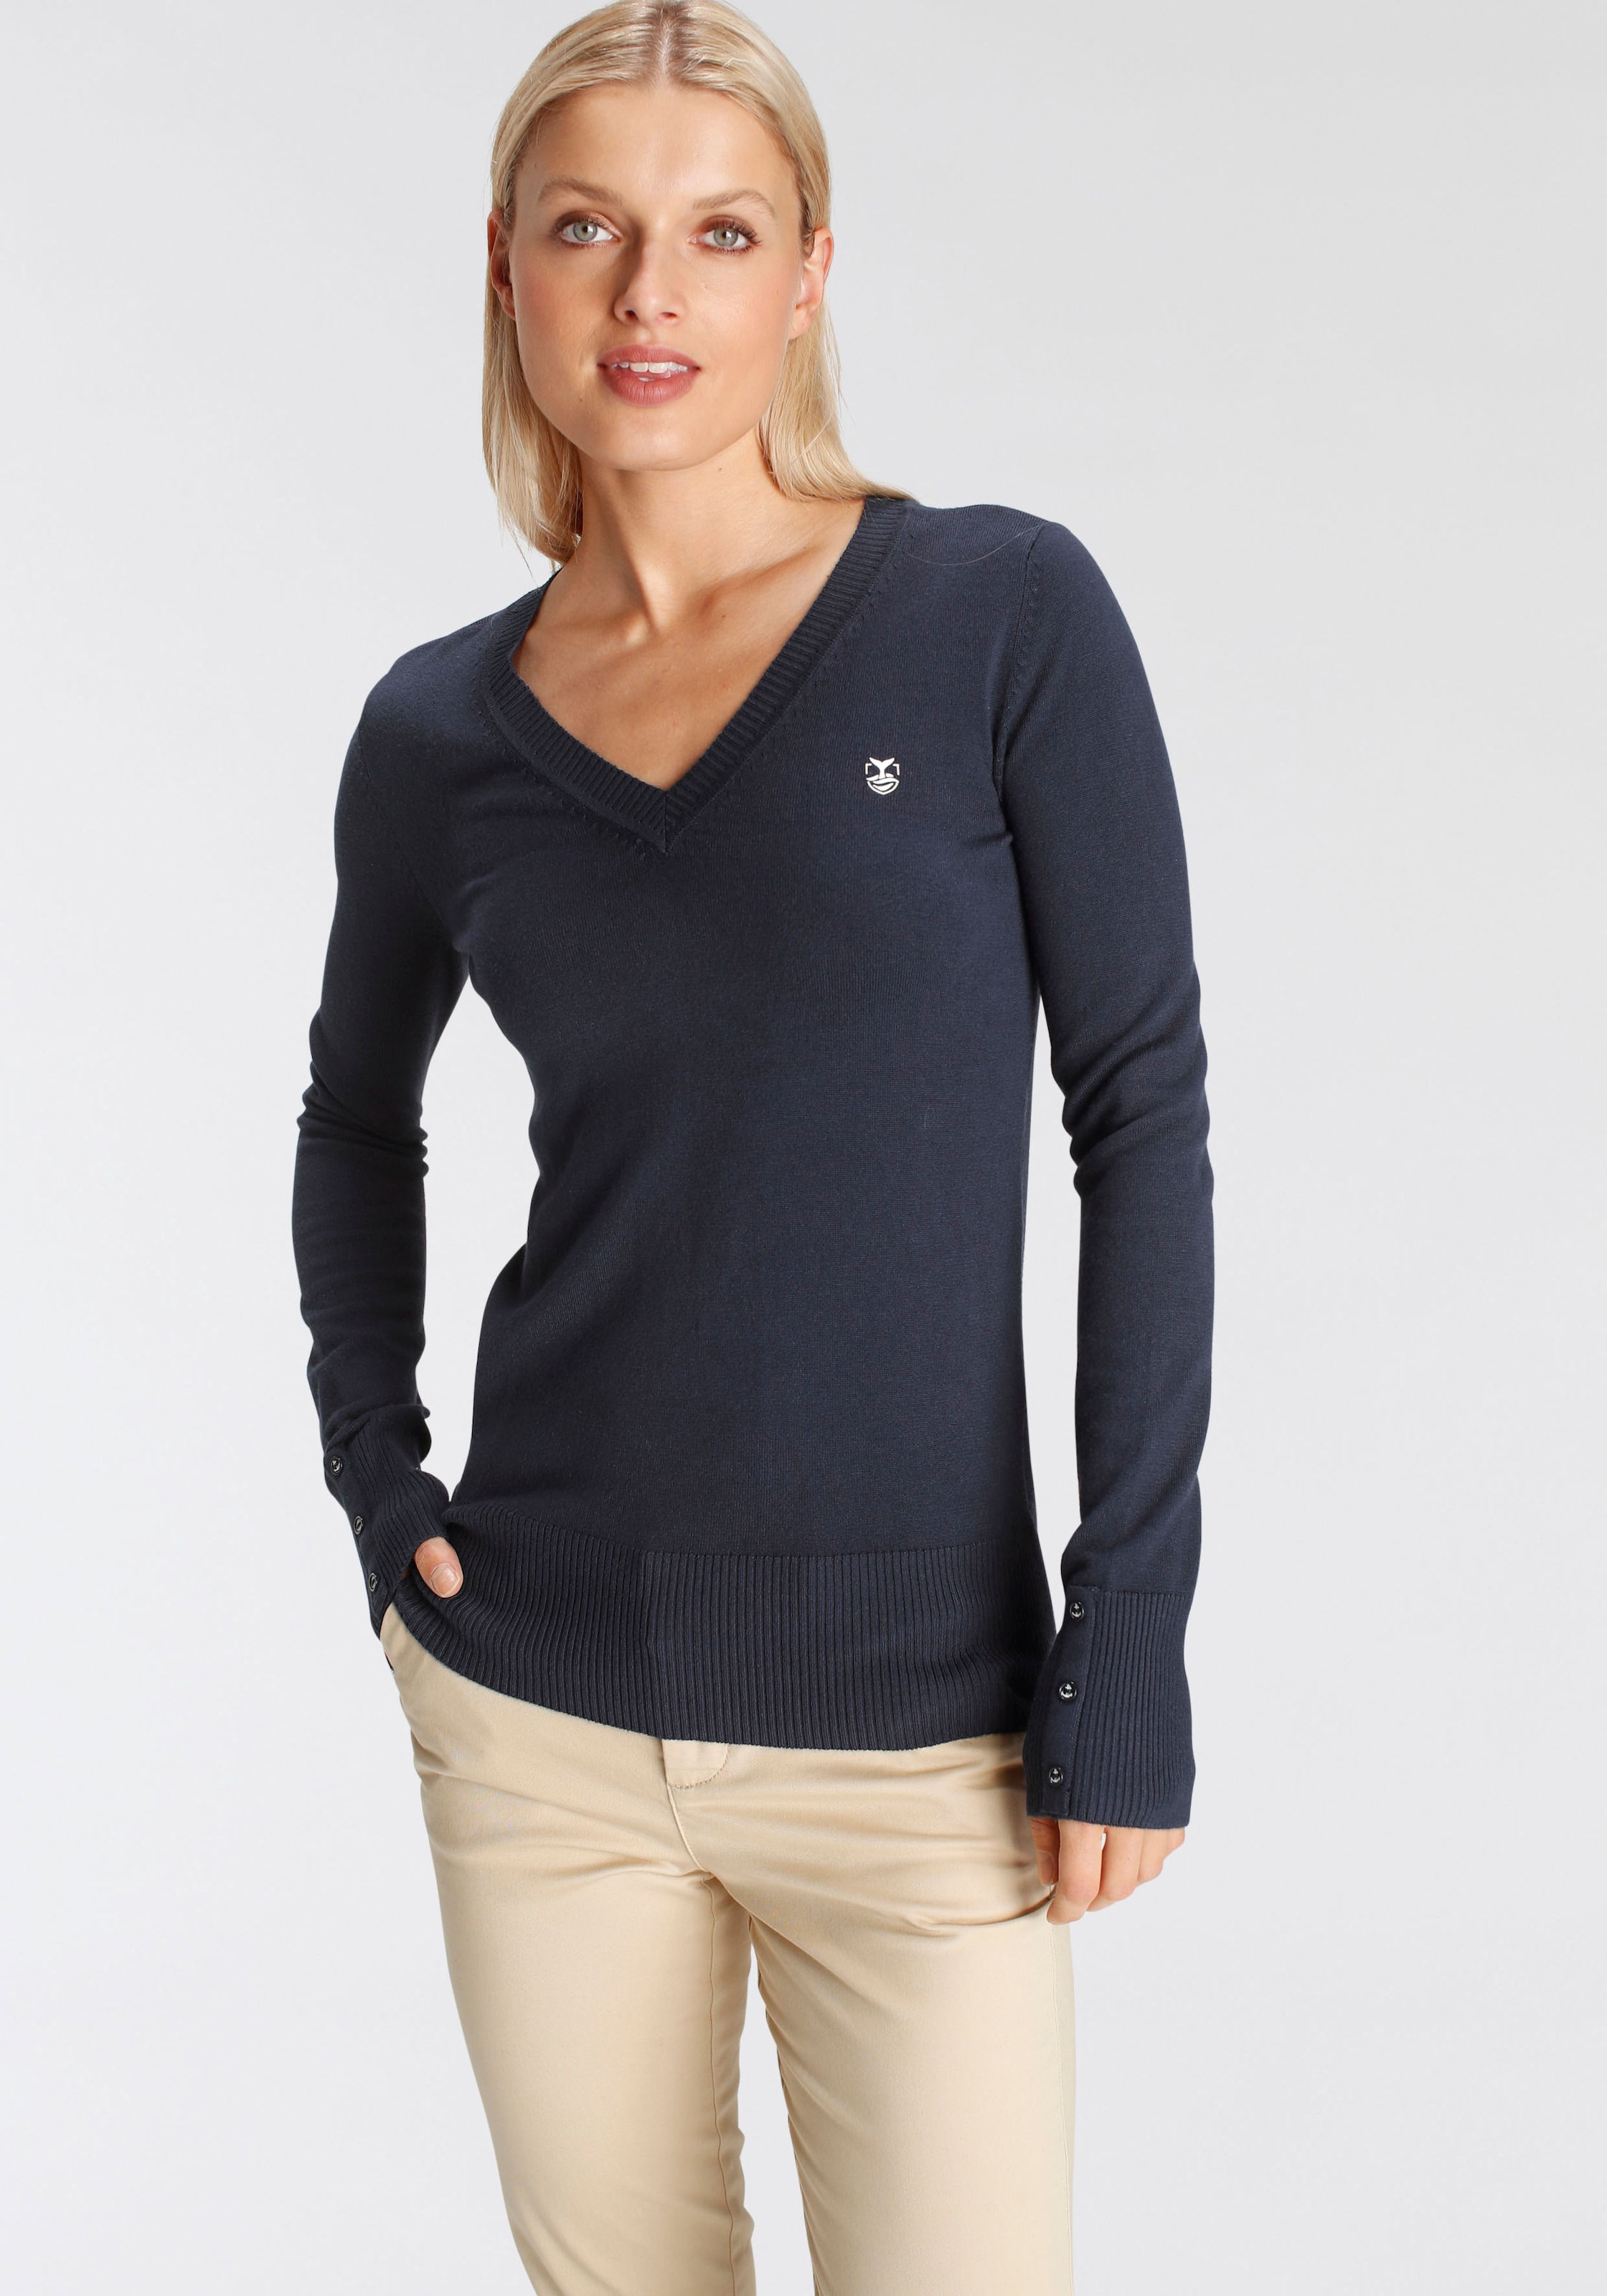 DELMAO V-Ausschnitt-Pullover mit kleinem Logodruck auf der Brust NEUE  MARKE!